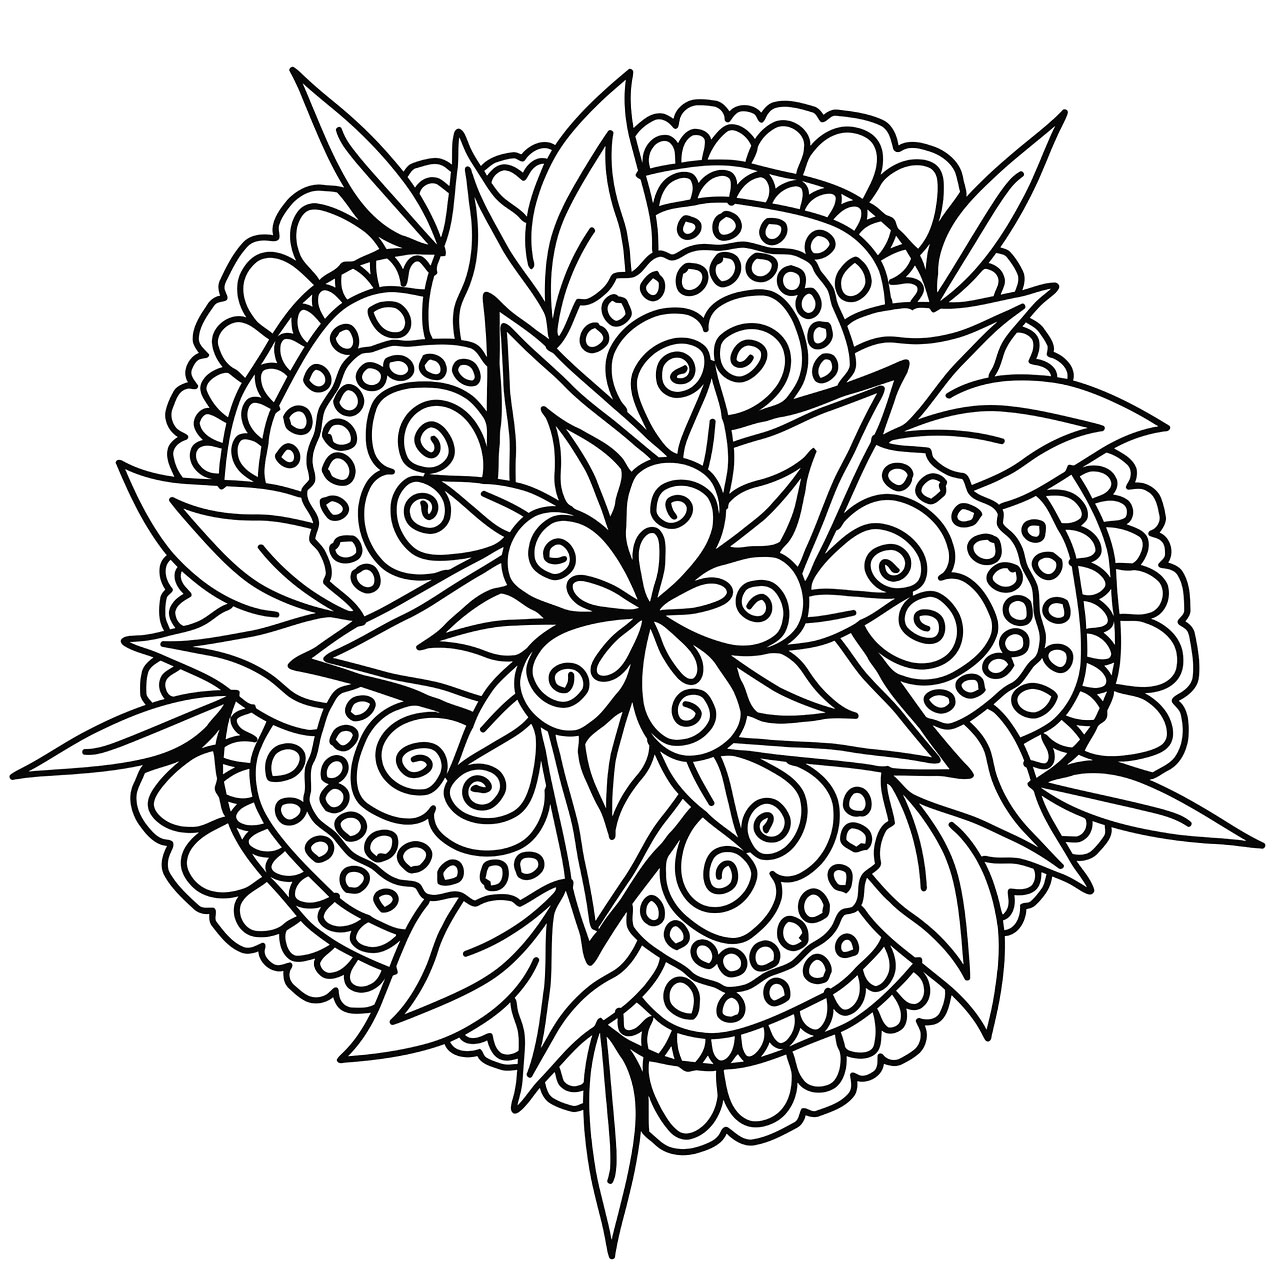 Für dieses coole handgezeichnete Mandala kannst du wenige oder viele Farben verwenden, ganz wie du willst. Du musst deinen Geist klären und dir erlauben, alle deine Sorgen und Verantwortlichkeiten zu vergessen.